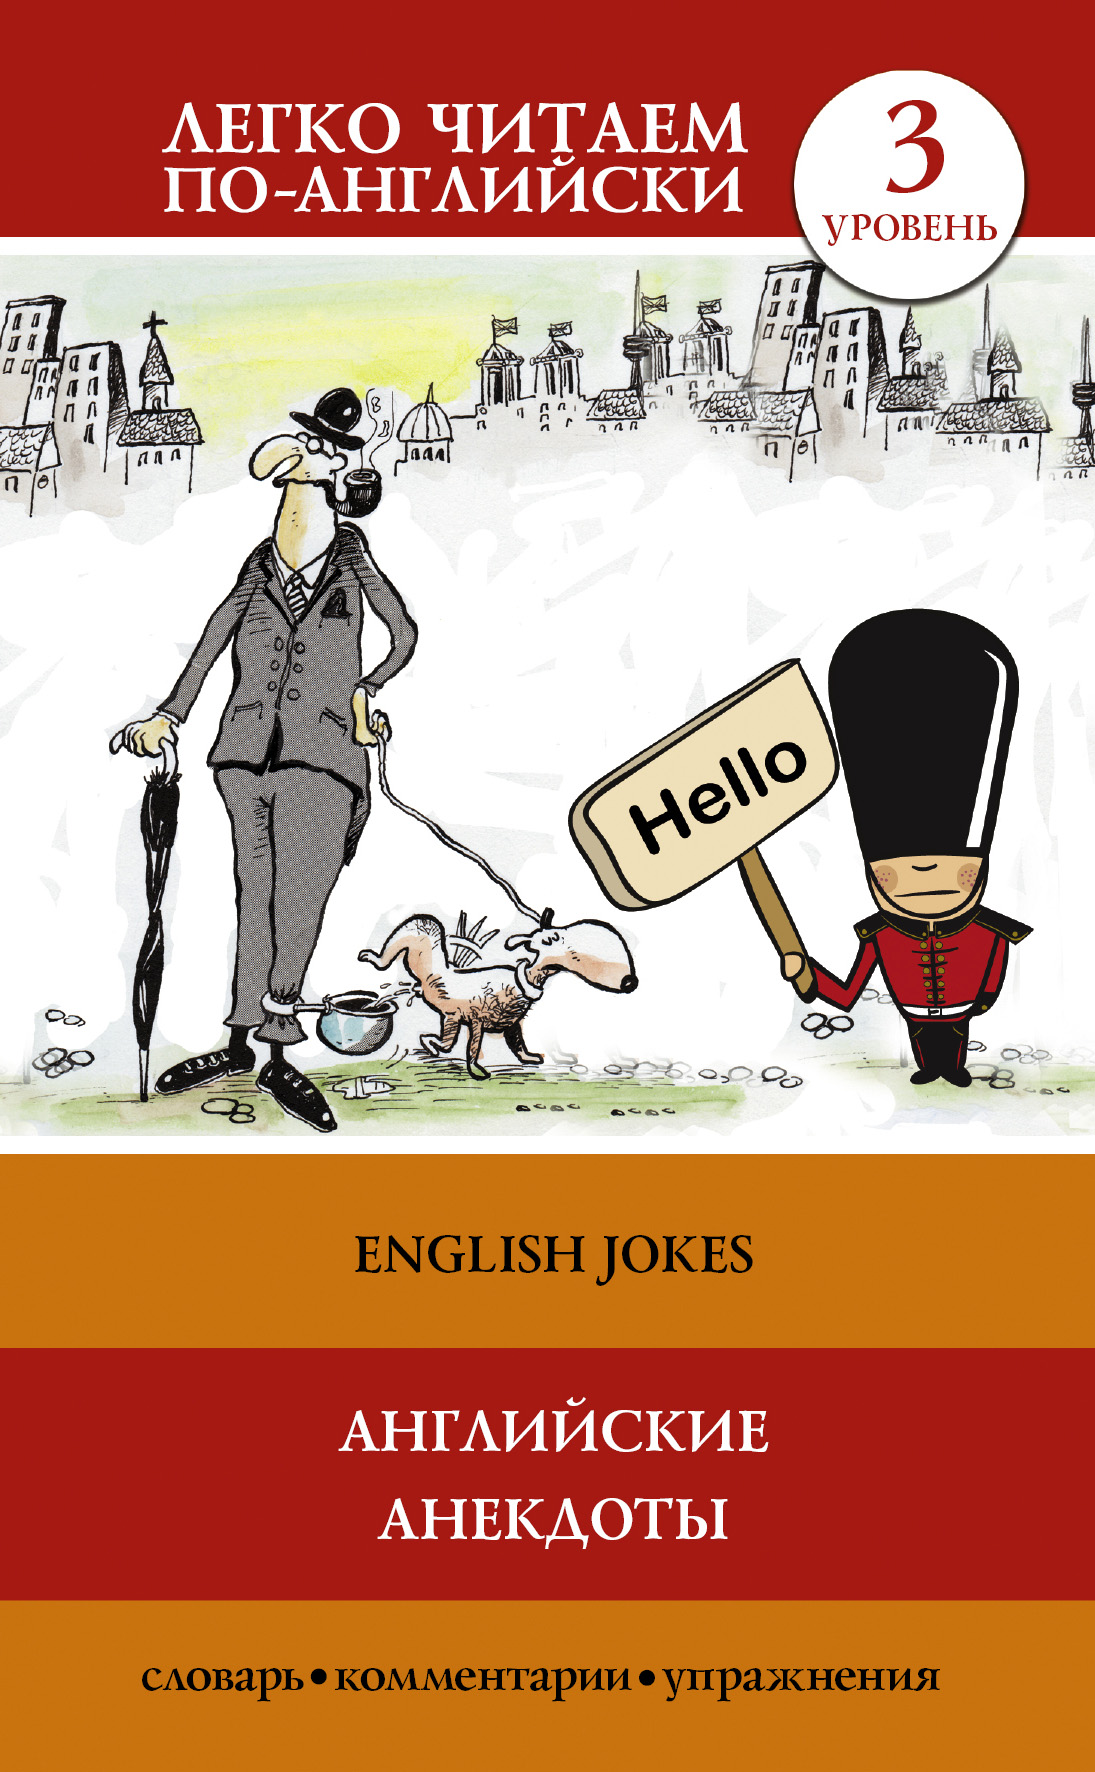 Книга Английские анекдоты / English Jokes из серии Легко читаем по-английски, созданная Сергей Матвеев, может относится к жанру Иностранные языки, Иностранные языки, Учебная литература. Стоимость электронной книги Английские анекдоты / English Jokes с идентификатором 21974788 составляет 89.90 руб.